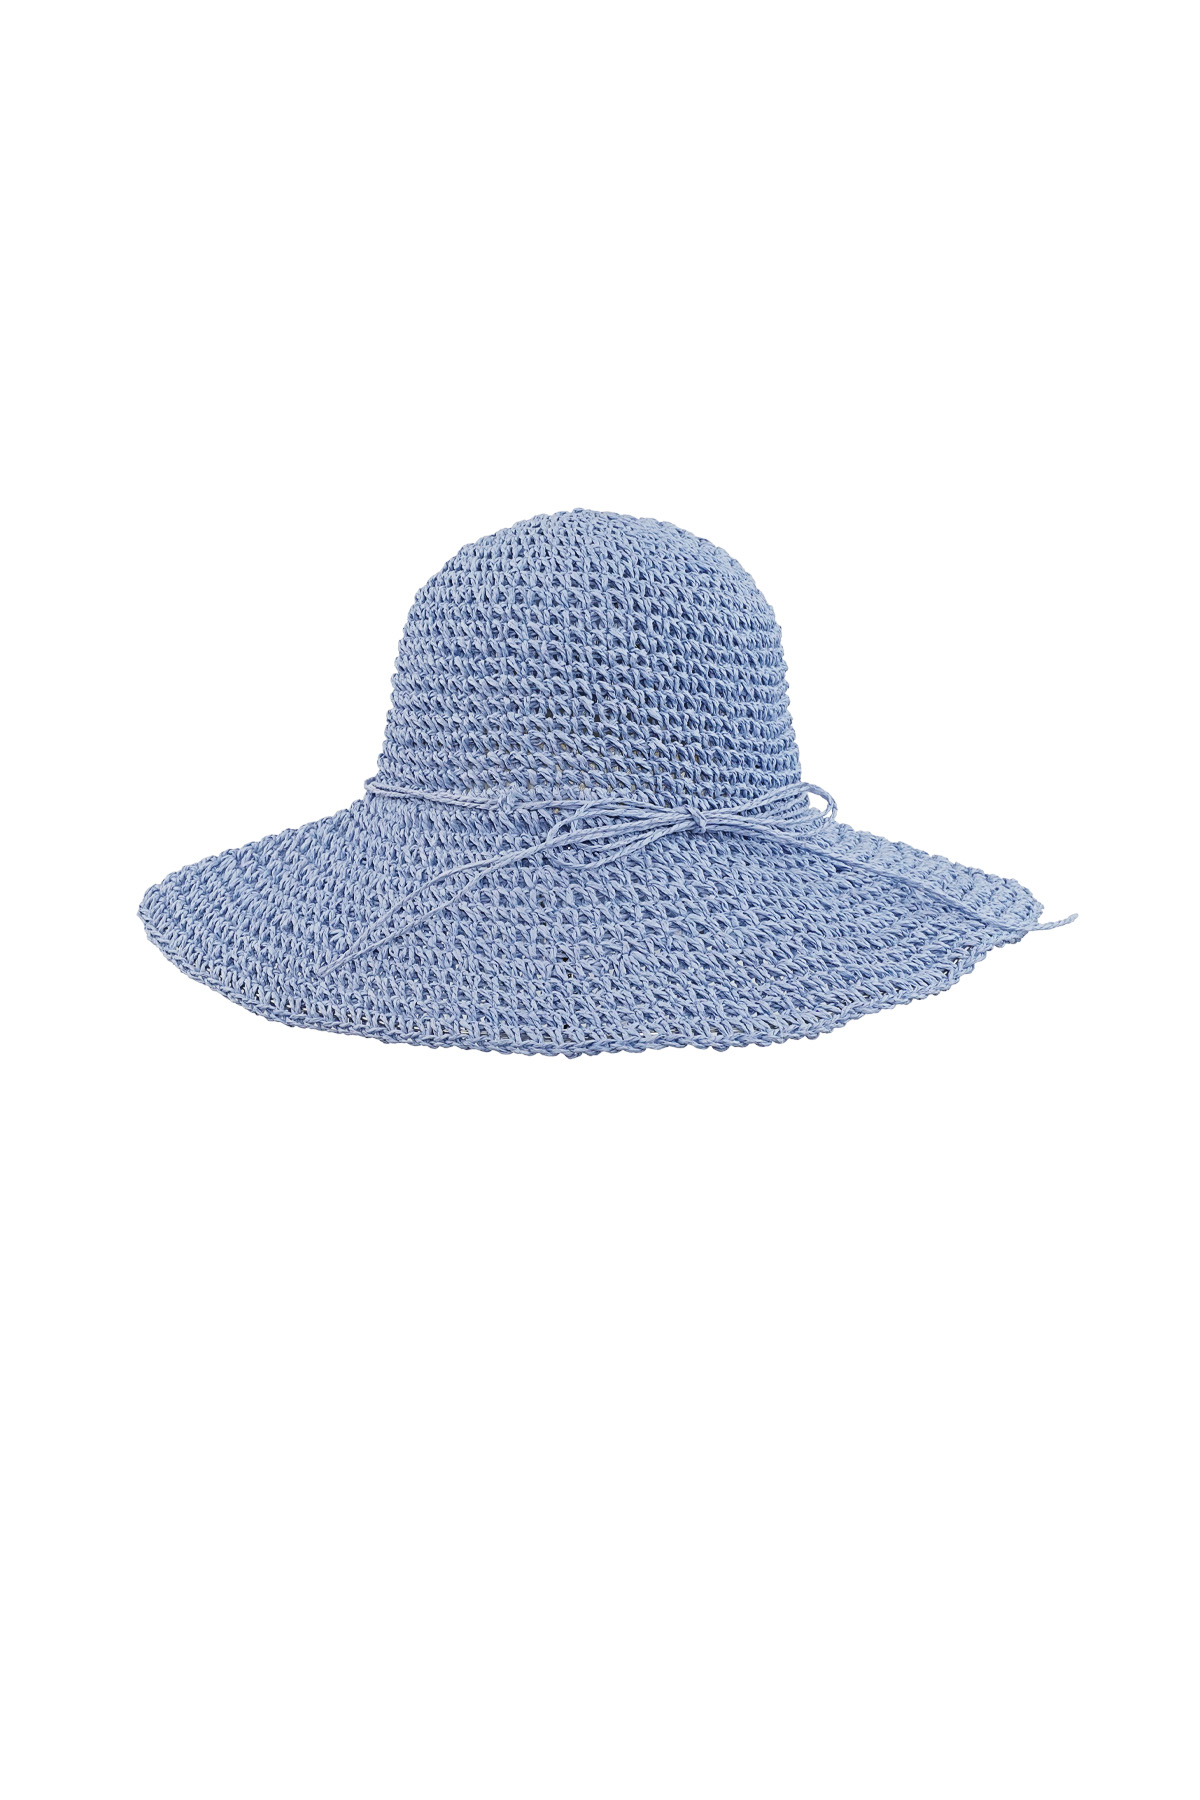 Crochet hoed met strik - blauw h5 